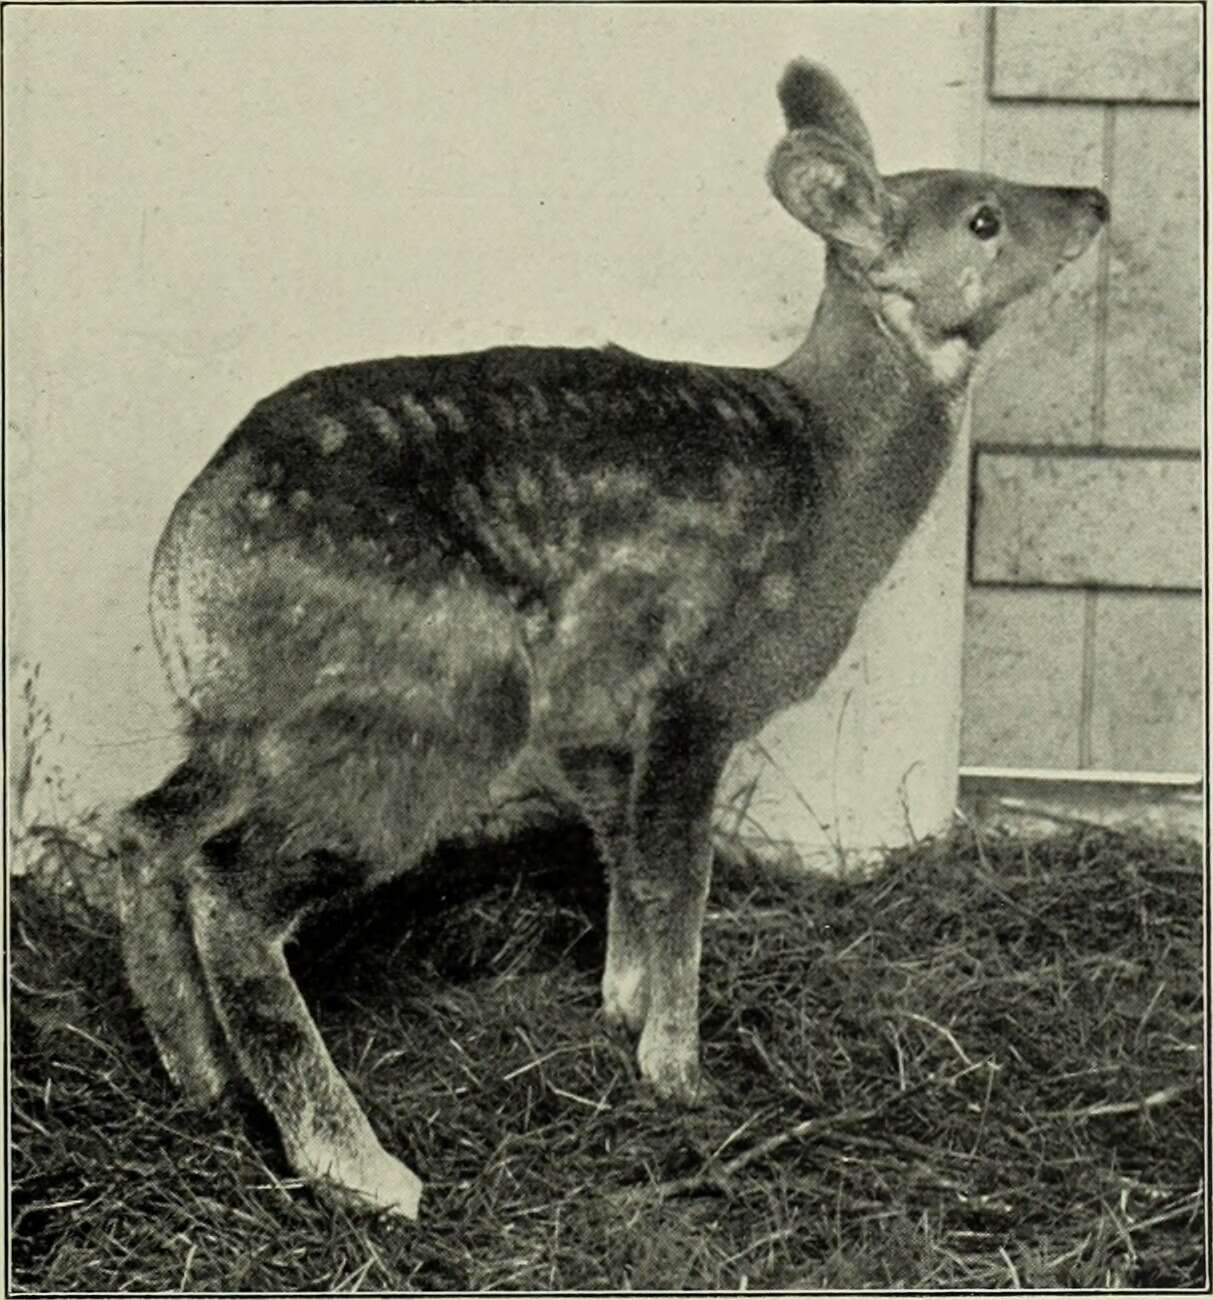 Image of Siberian Musk Deer